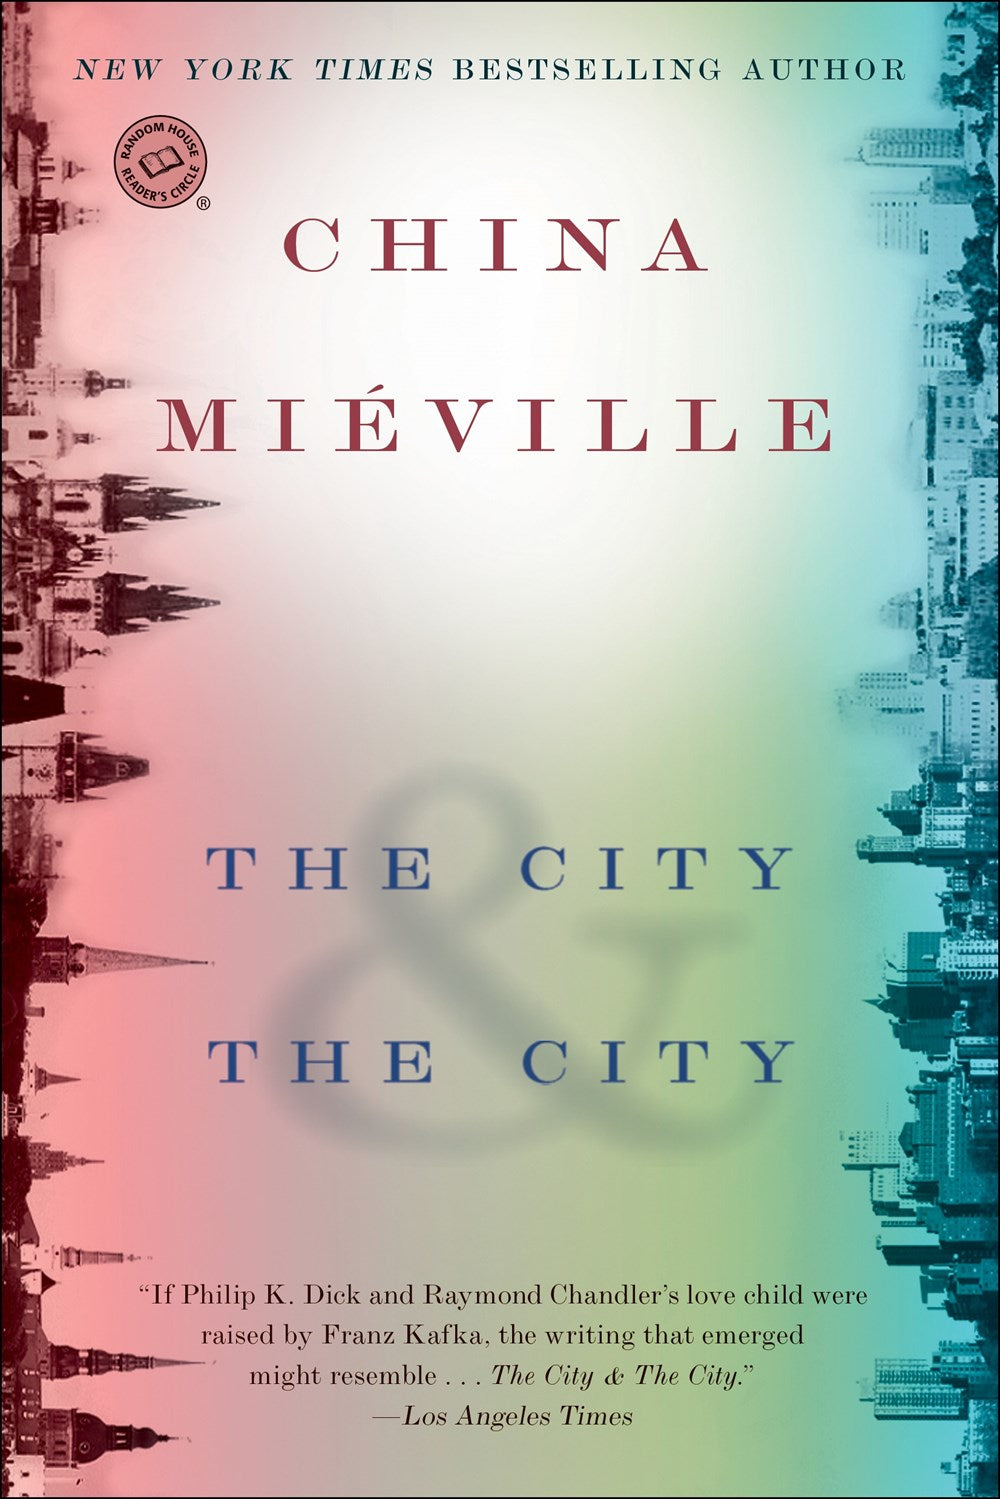 The City & The City: A Novel by China Miéville